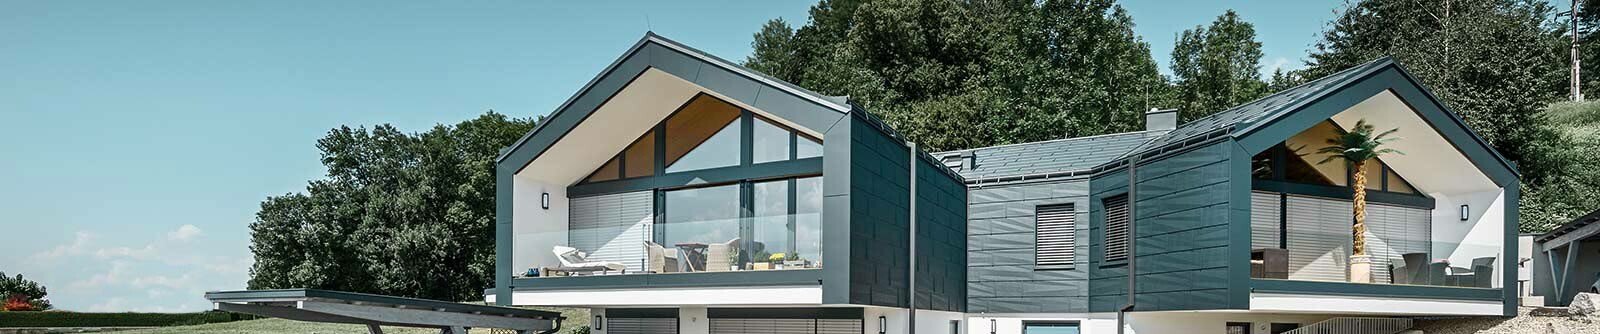 Casa unifamiliare PREFA con FX.12 tetto e pluviale quadro in antracite.